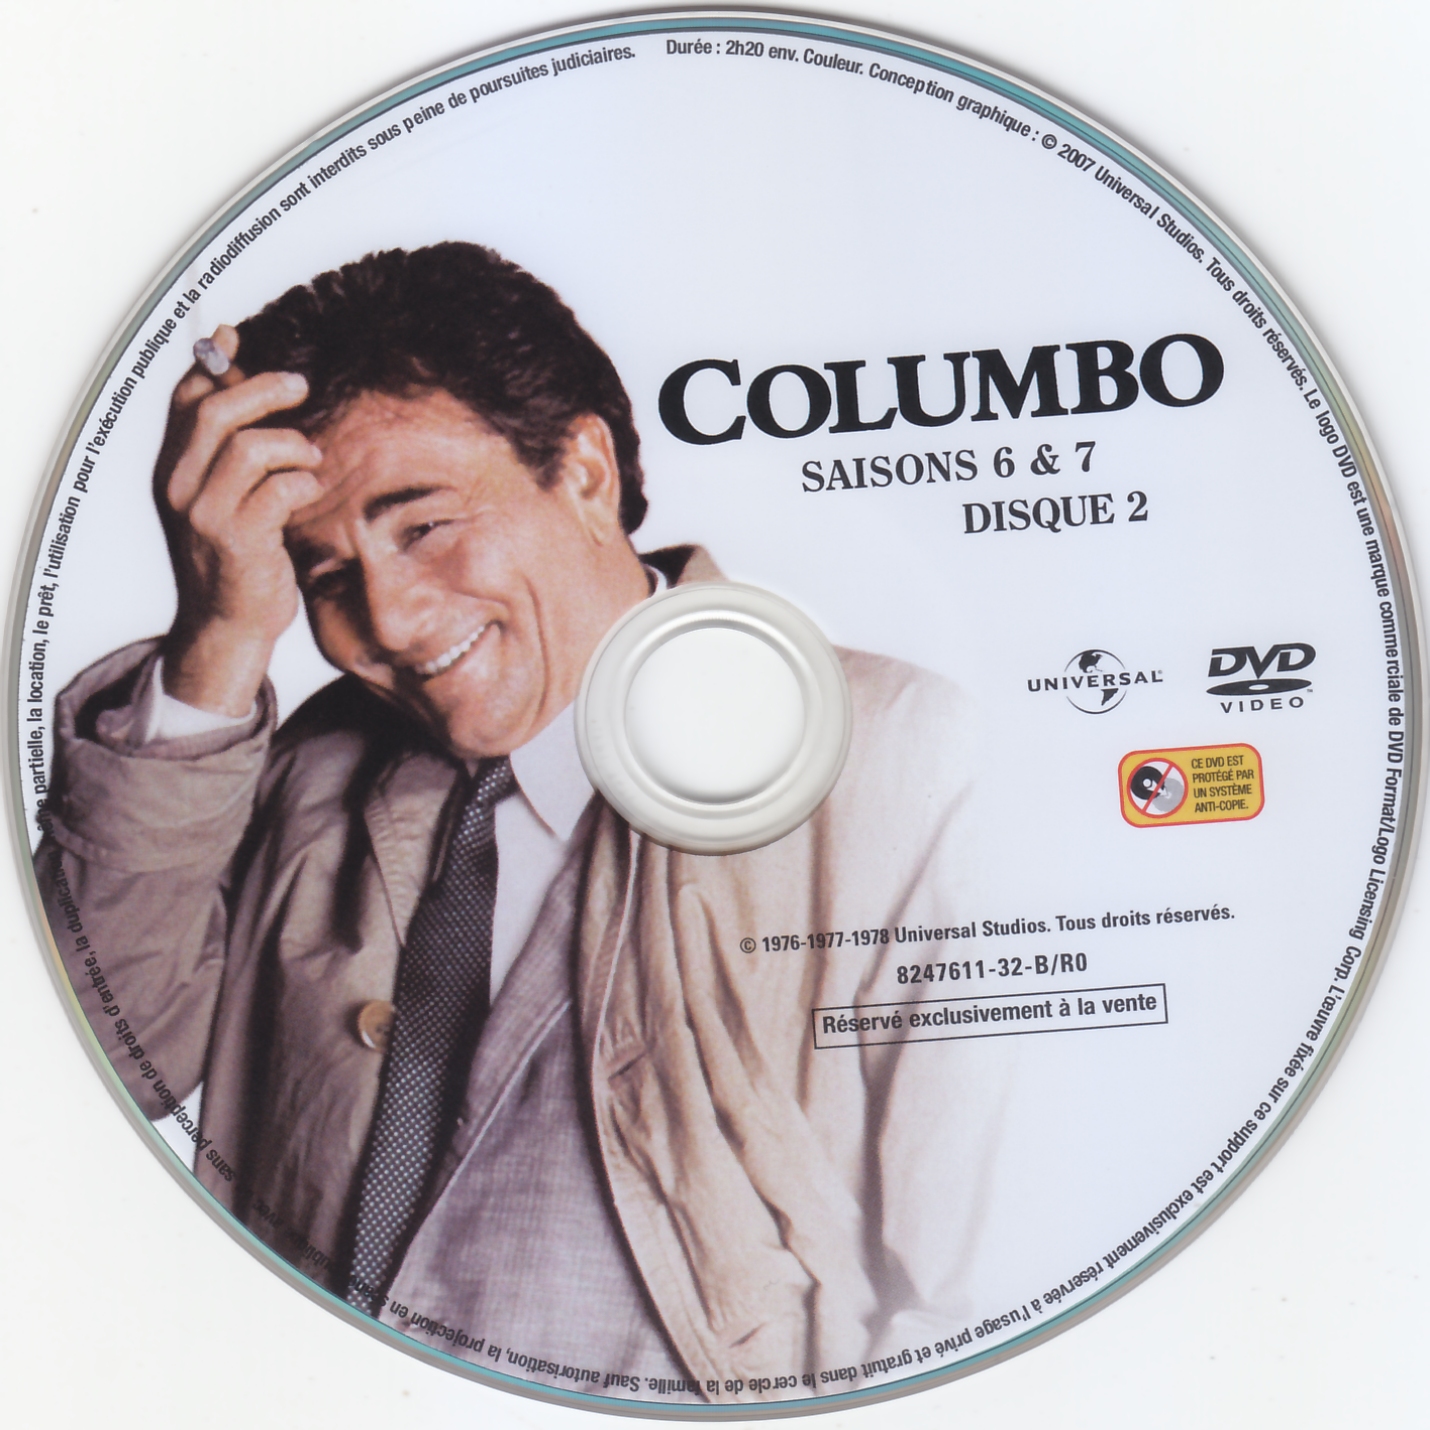 Columbo S6 et 7 DISC2